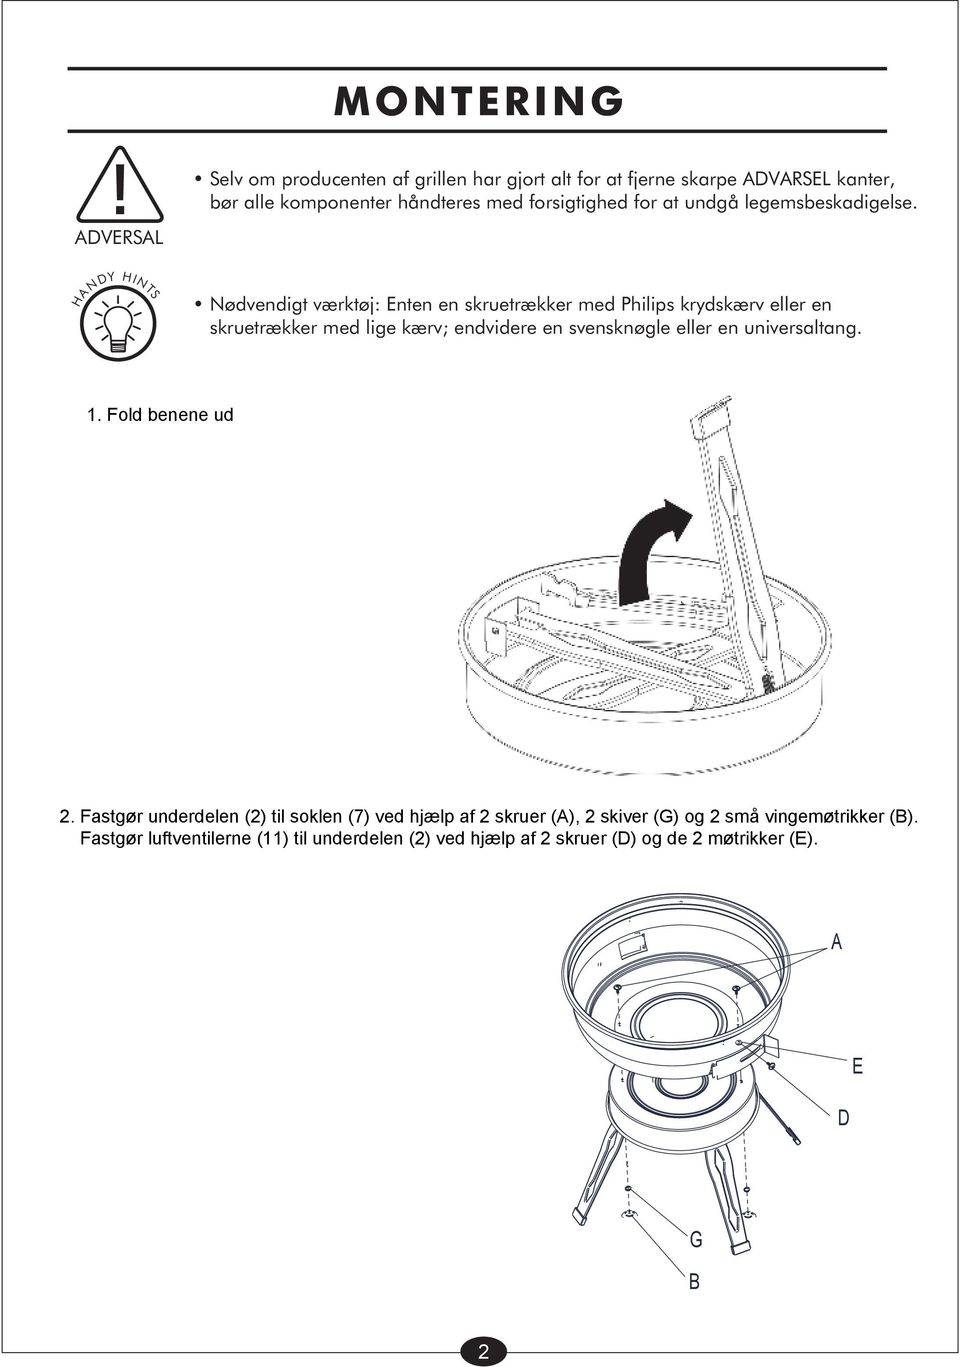 ADVERSAL HA NDY HINTS Nødvendigt værktøj: Enten en skruetrækker med Philips krydskærv eller en skruetrækker med lige kærv; endvidere en